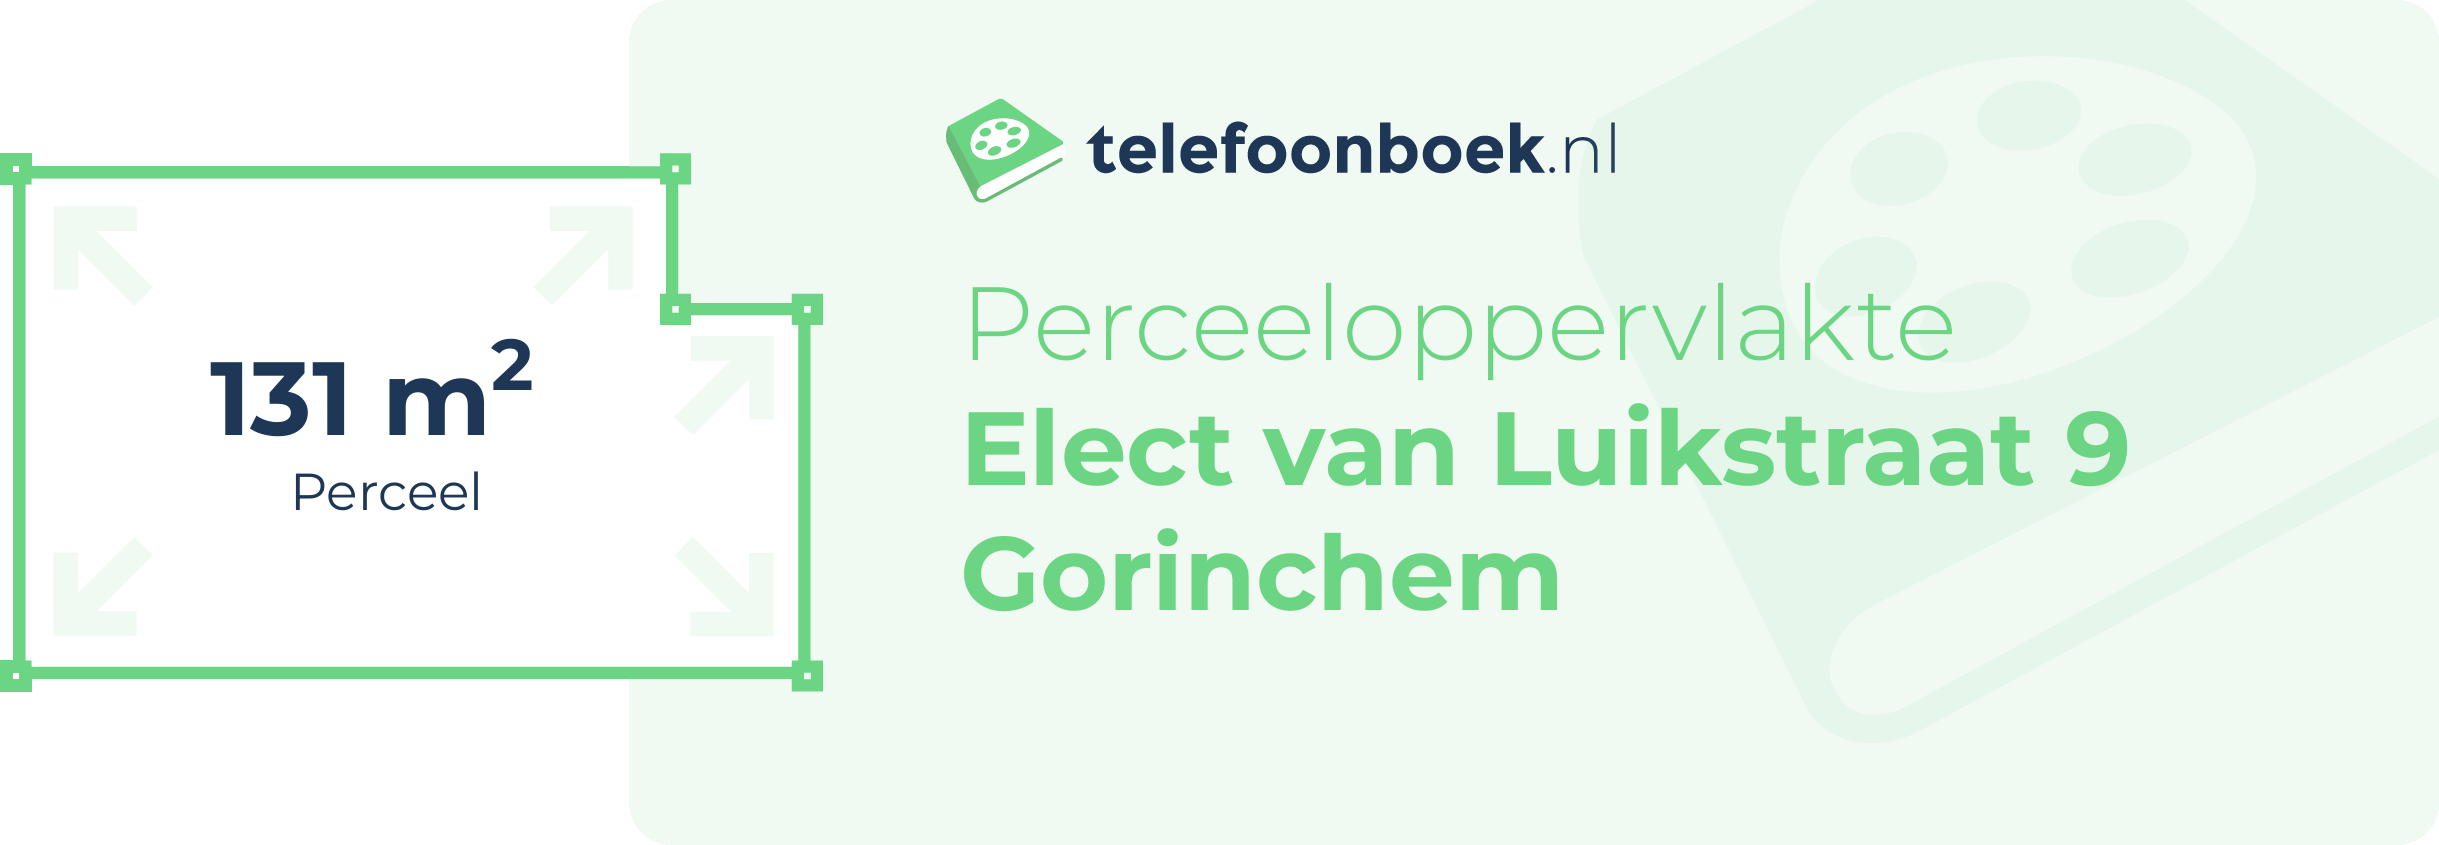 Perceeloppervlakte Elect Van Luikstraat 9 Gorinchem